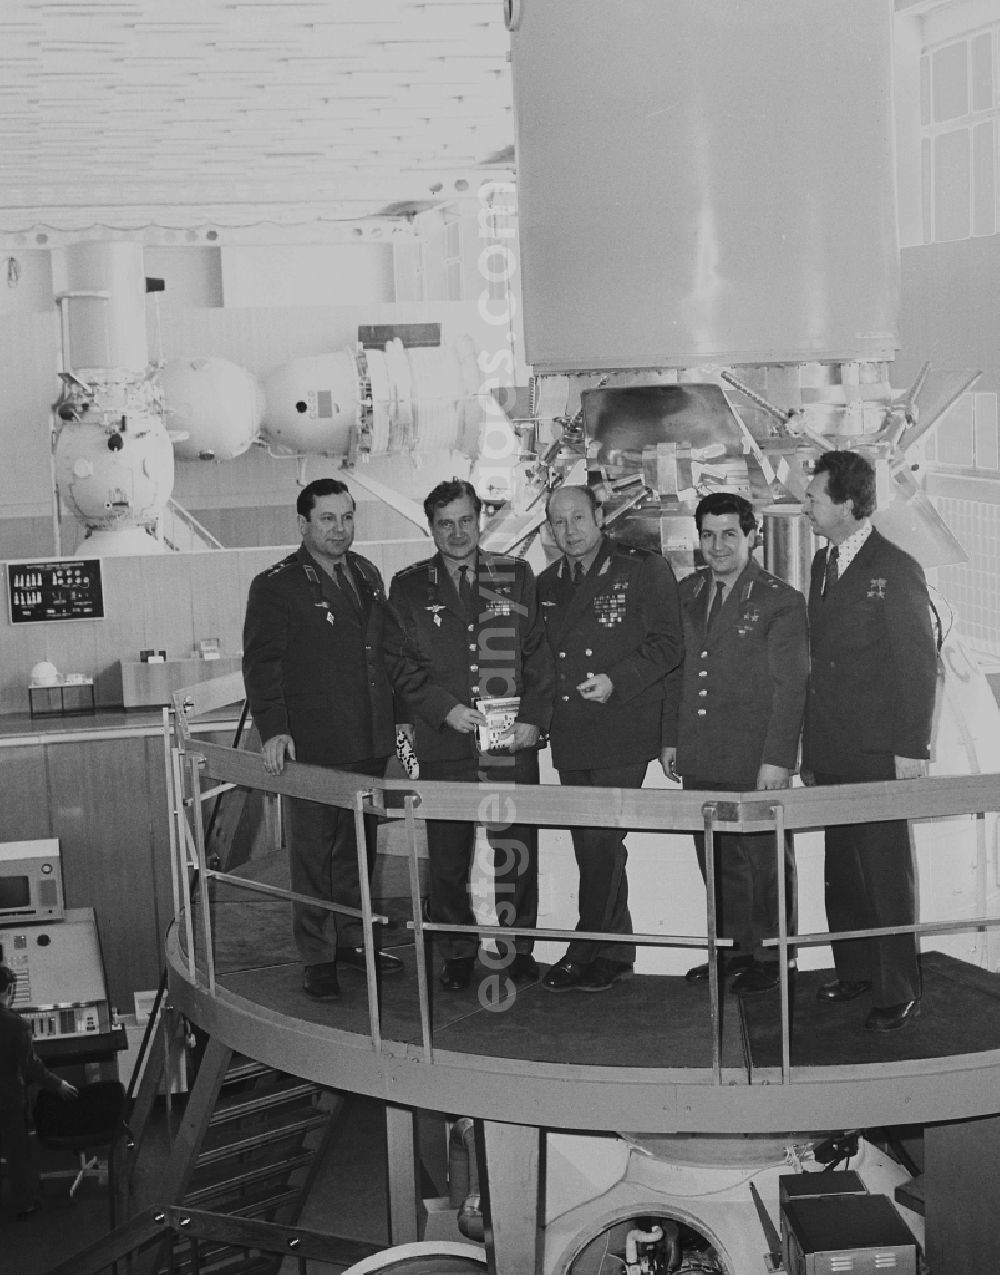 GDR picture archive: Swjosdny Gorodok - Cosmonauts in Zvyozdny gorodok to German Star City, from left Pavel Popovich (1930-2009), Vitaly Sevastyanov (1935-201